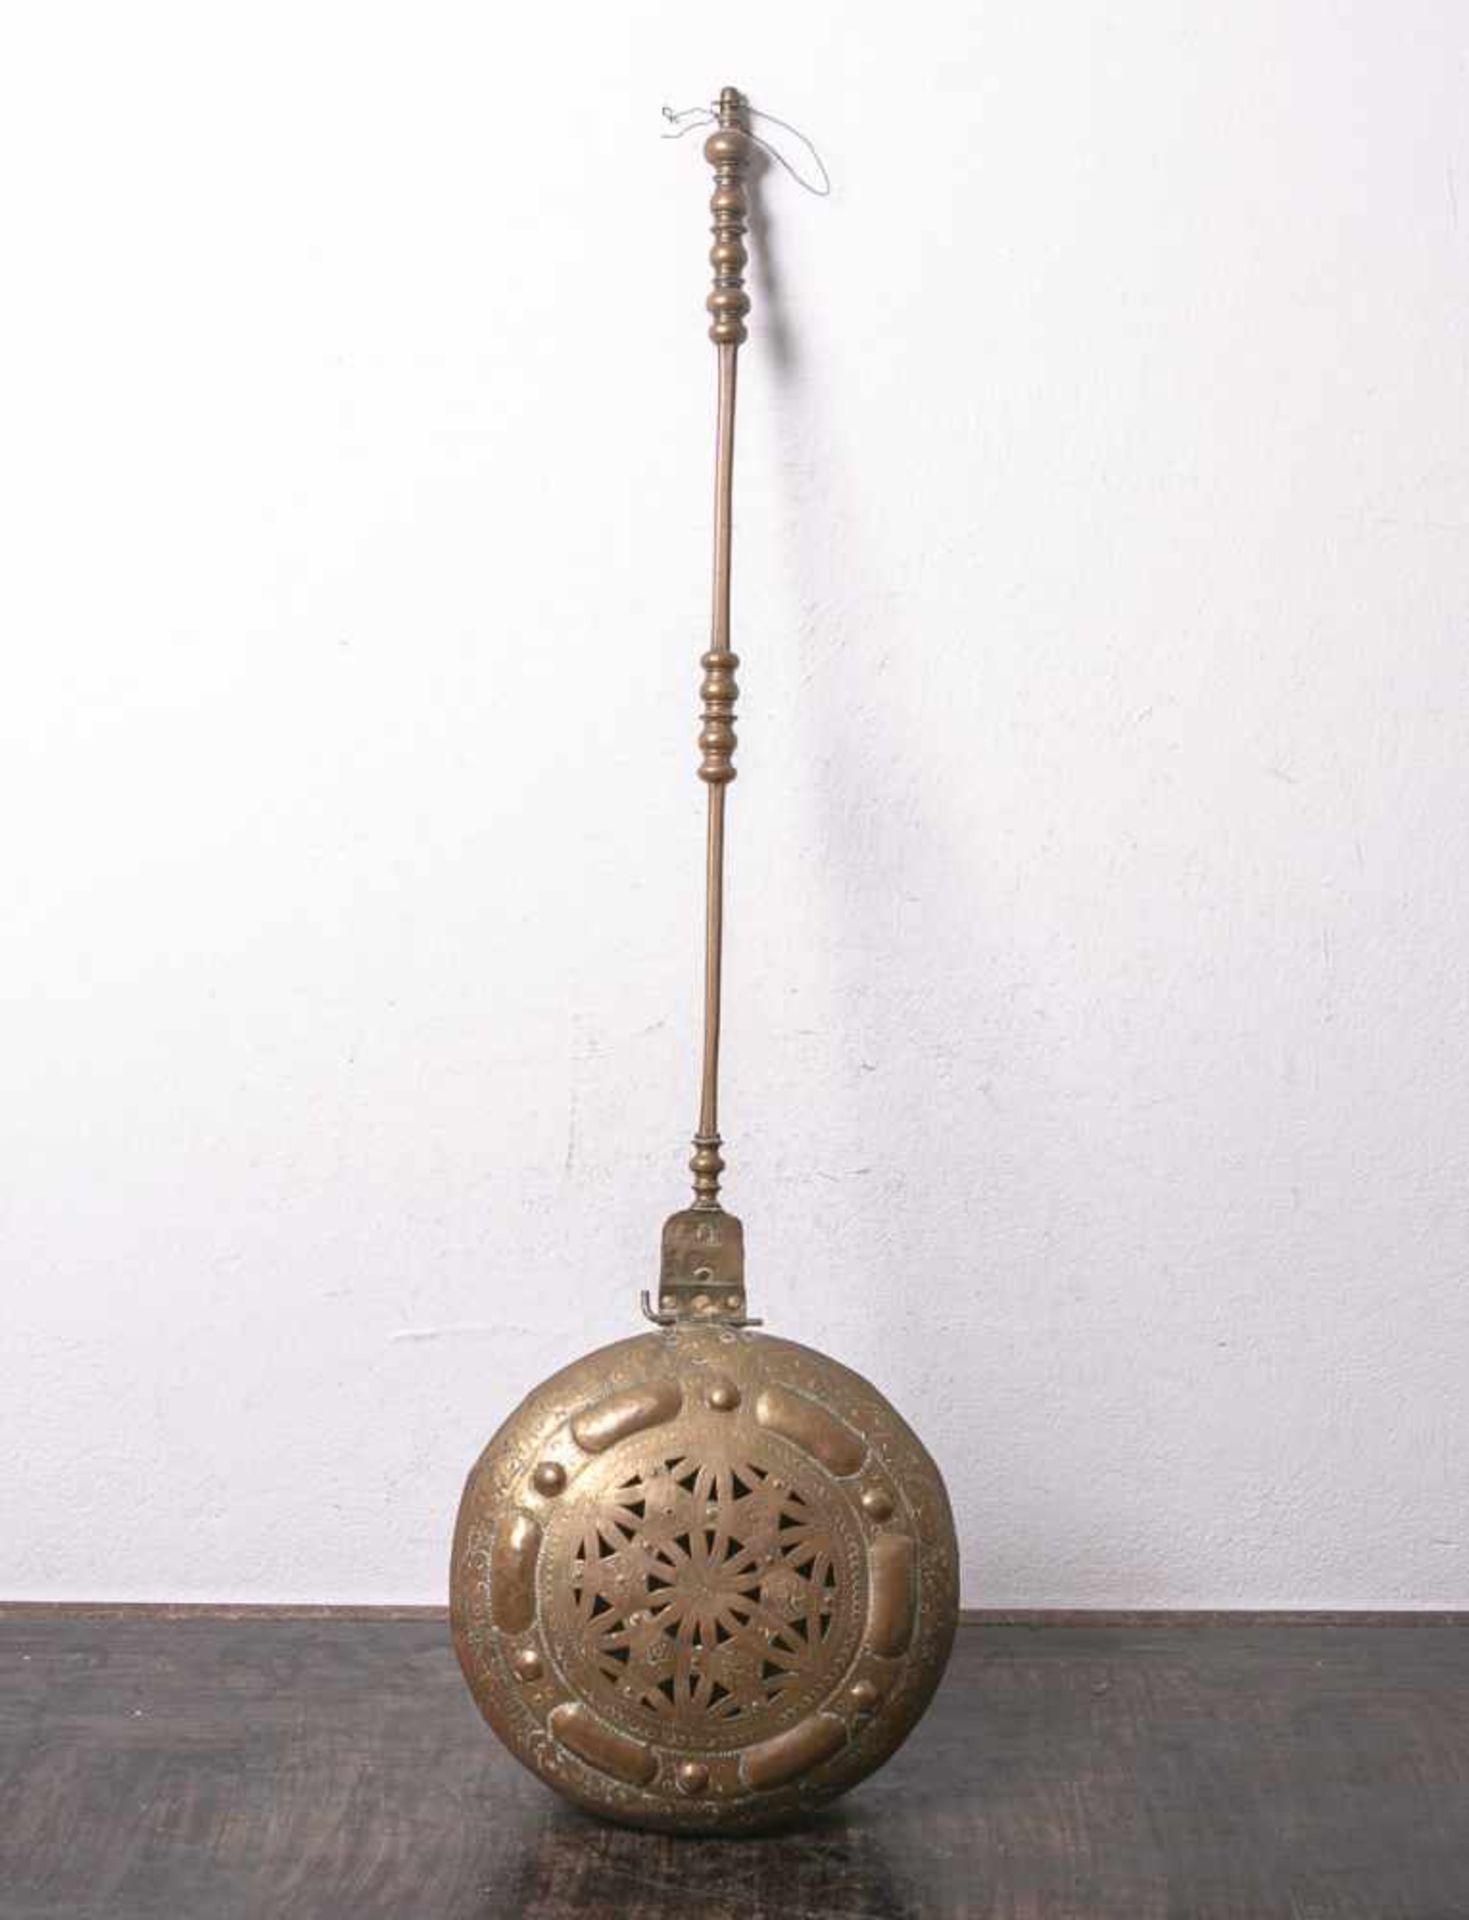 Bettpfanne bzw. Bettwärmer (18. Jahrhundert), Messing/Kupfer, runde Form m. durchbrochen<